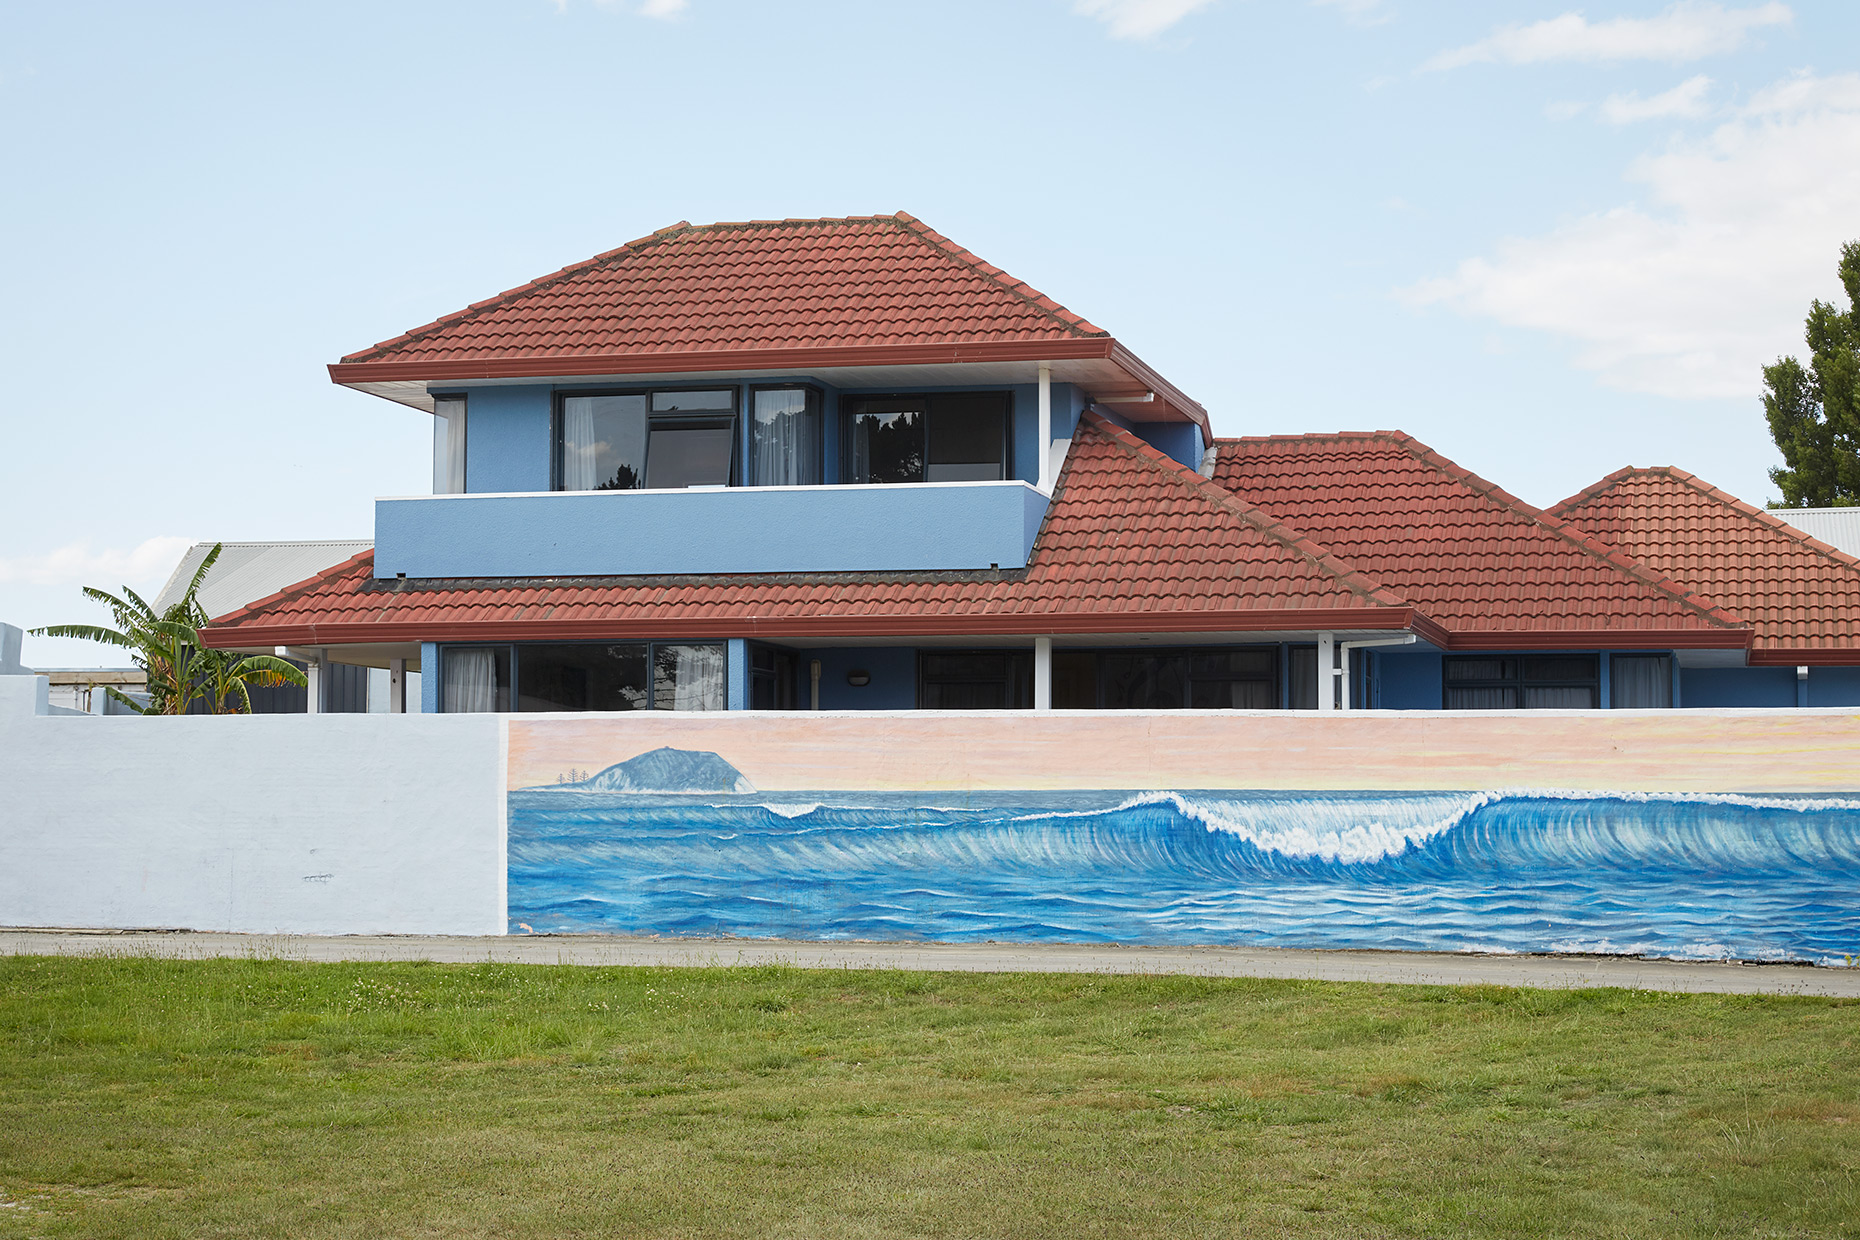 Coastal house, Gisborne, New Zealand, 2020